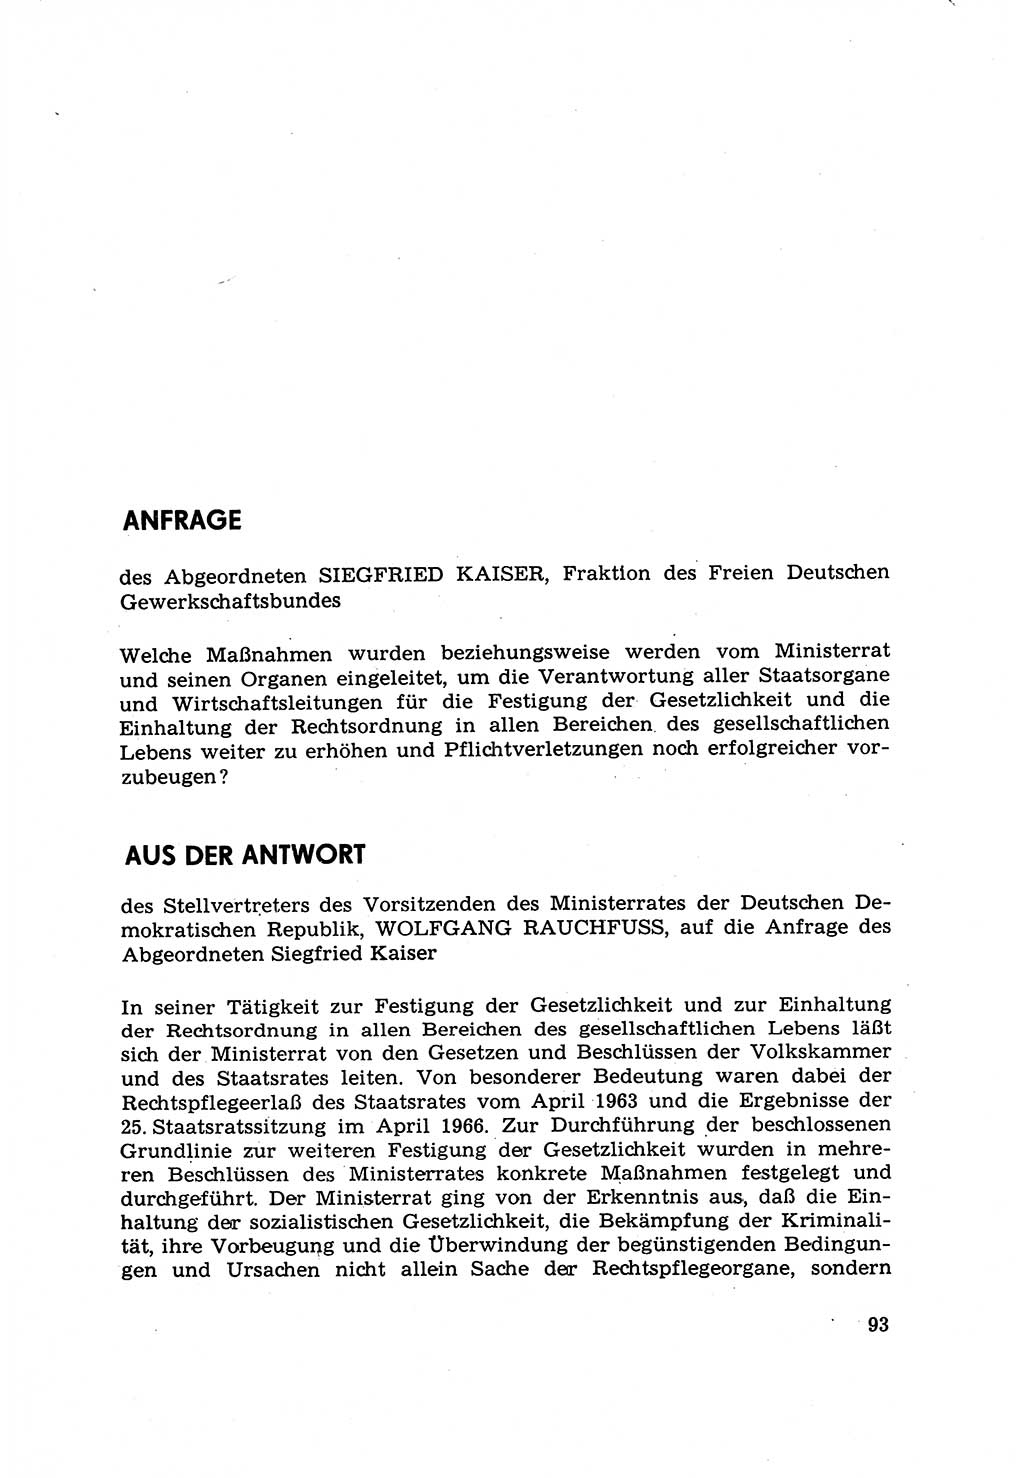 Strafrecht [Deutsche Demokratische Republik (DDR)] 1968, Seite 93 (Strafr. DDR 1968, S. 93)